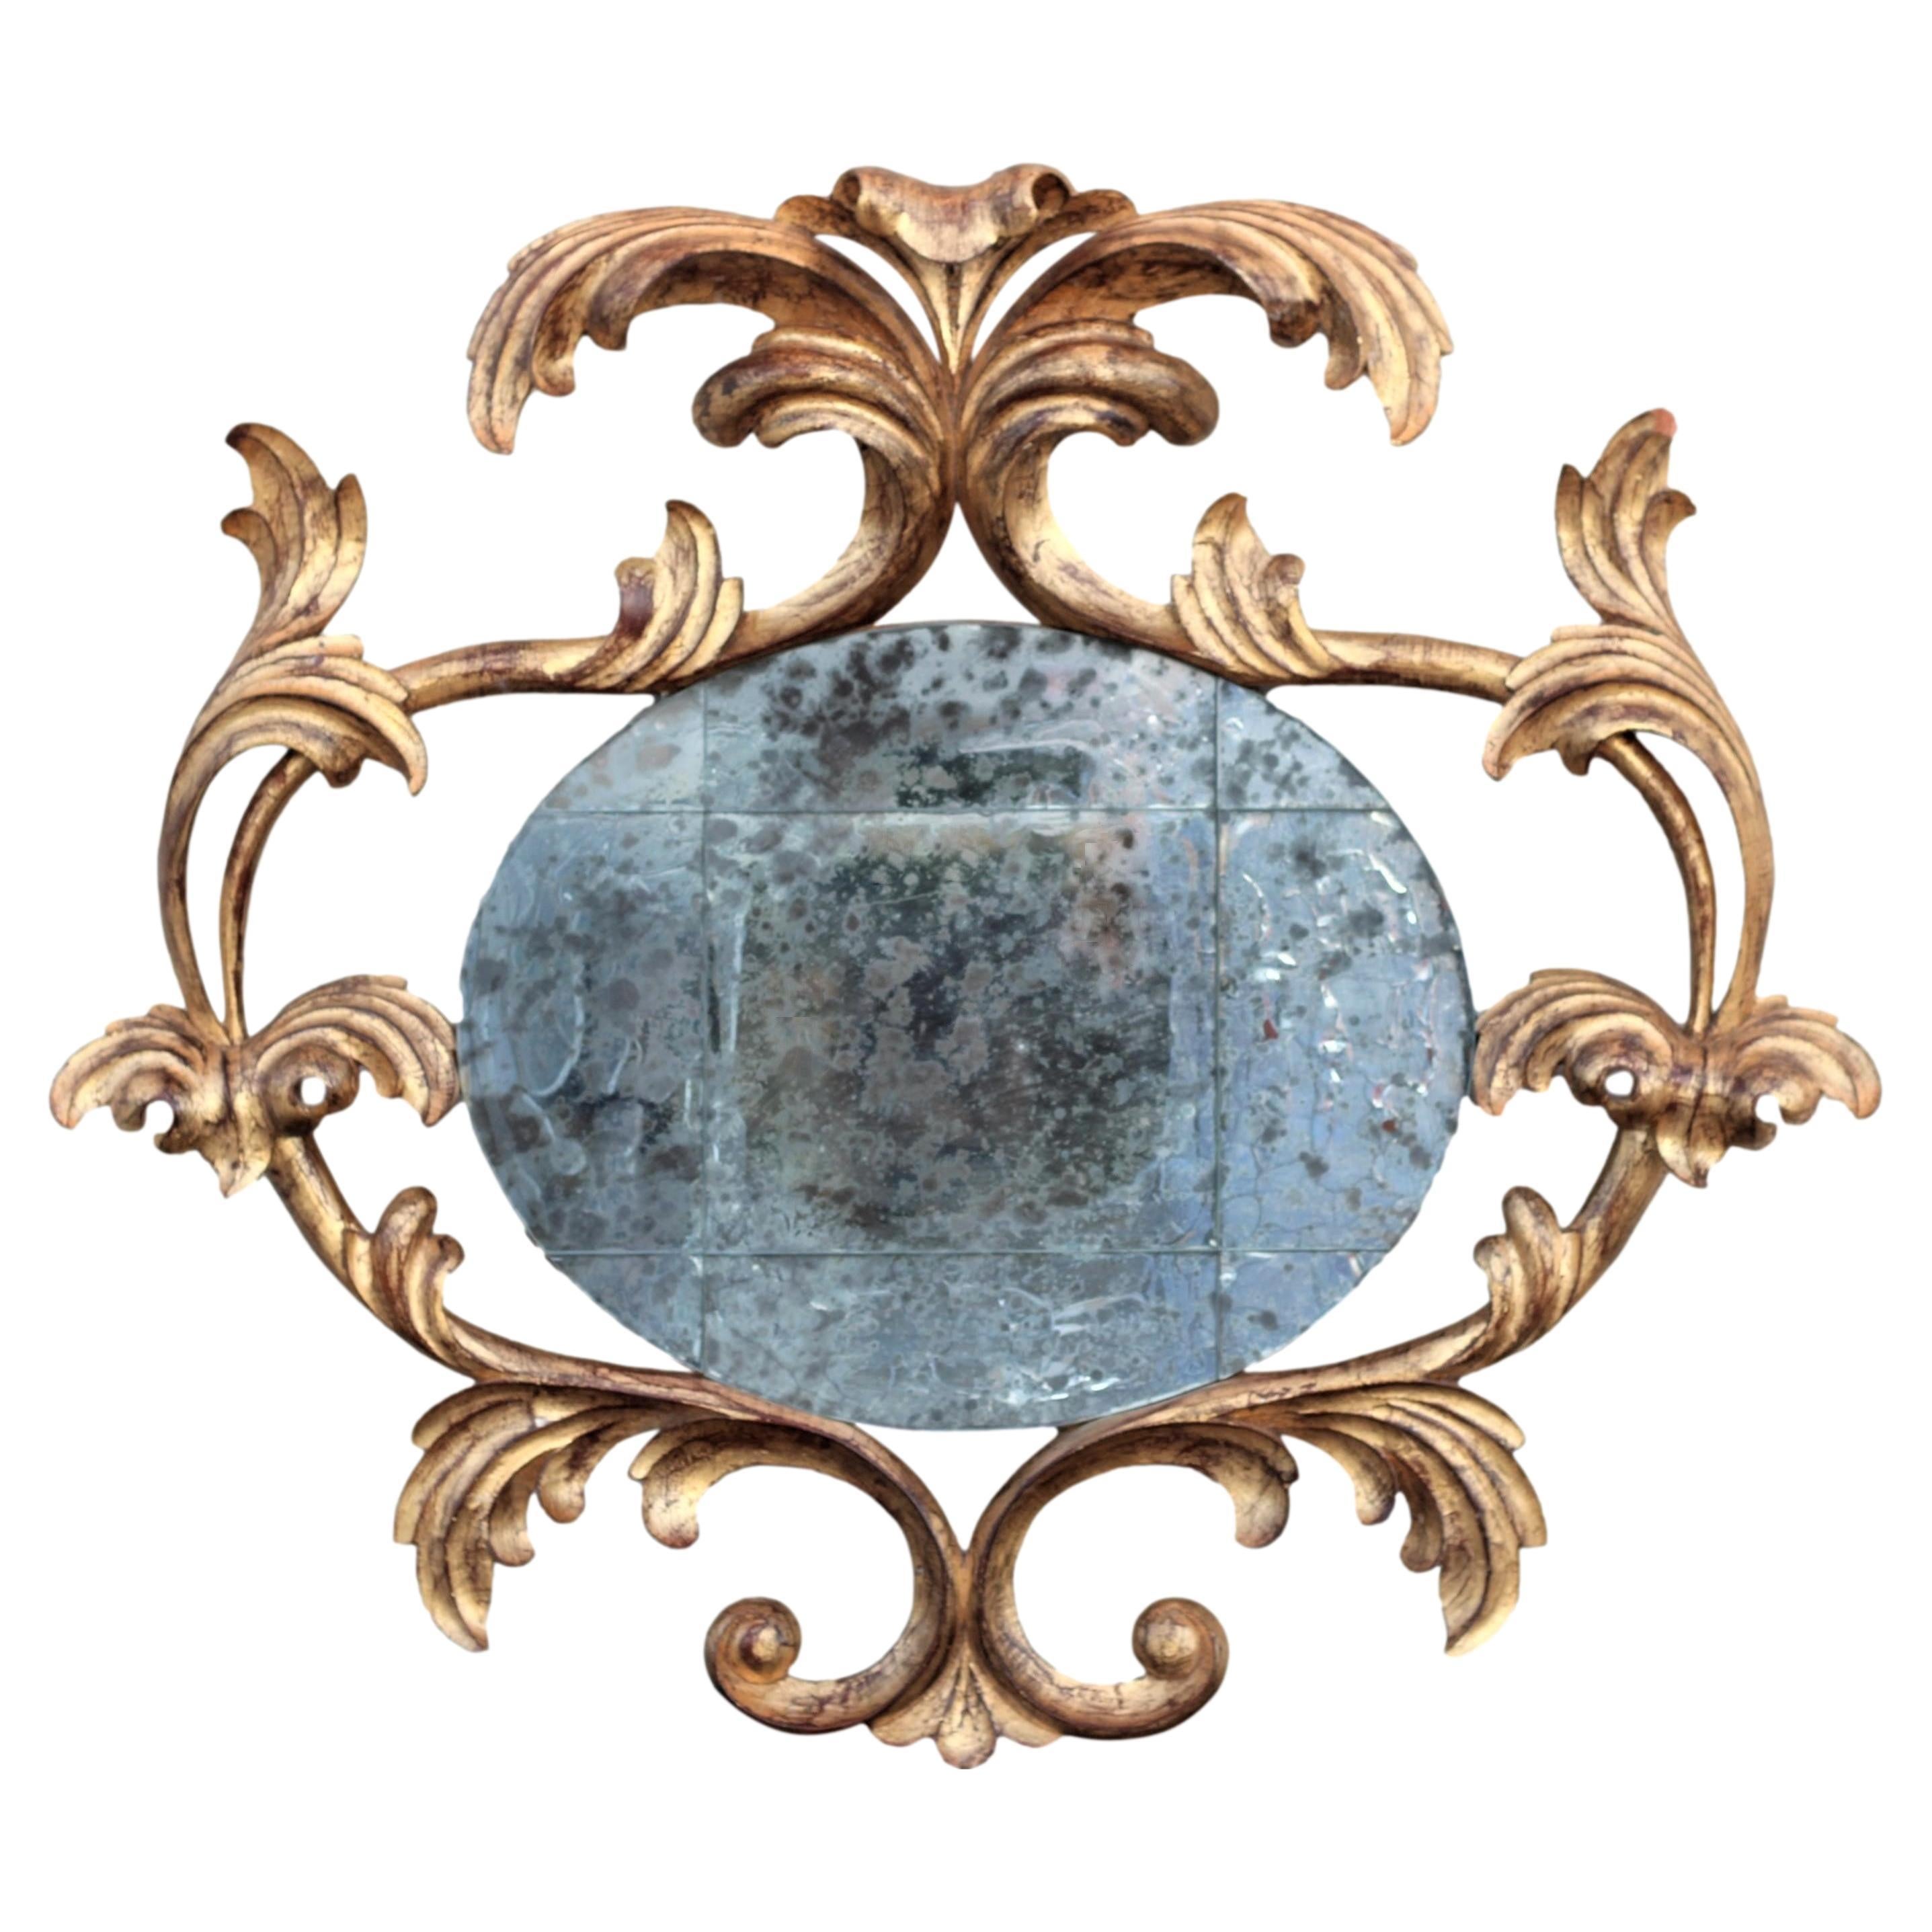 Harrison & Gil miroir rococo en bois doré sculpté avec verre vieilli et vieilli